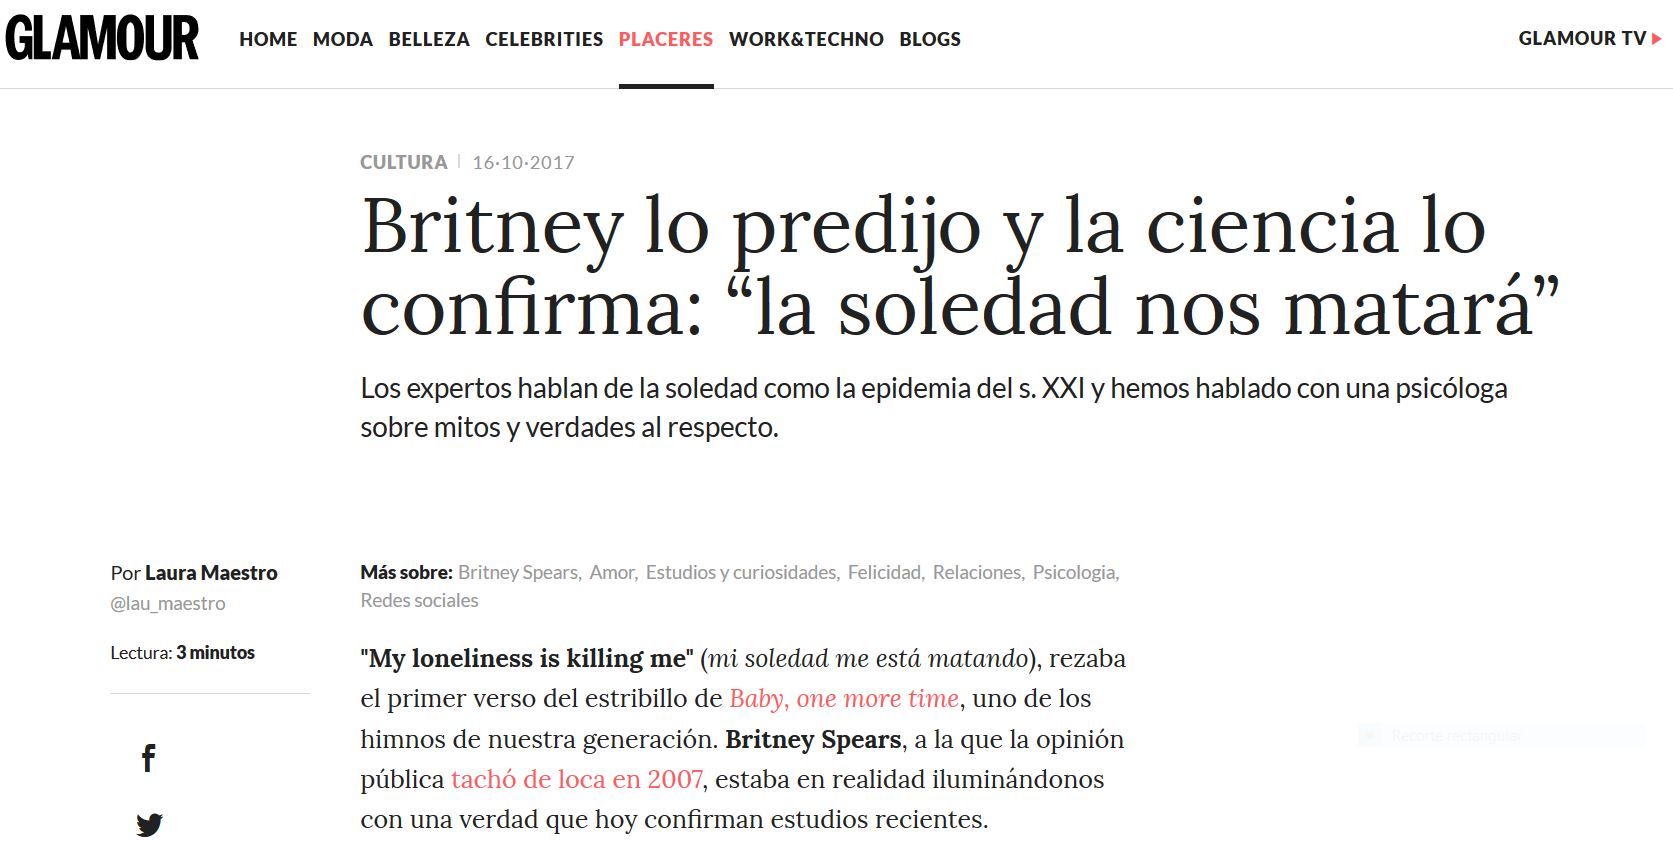 Glamour: Britney lo predijo y la ciencia lo confirma: “la soledad nos matará”